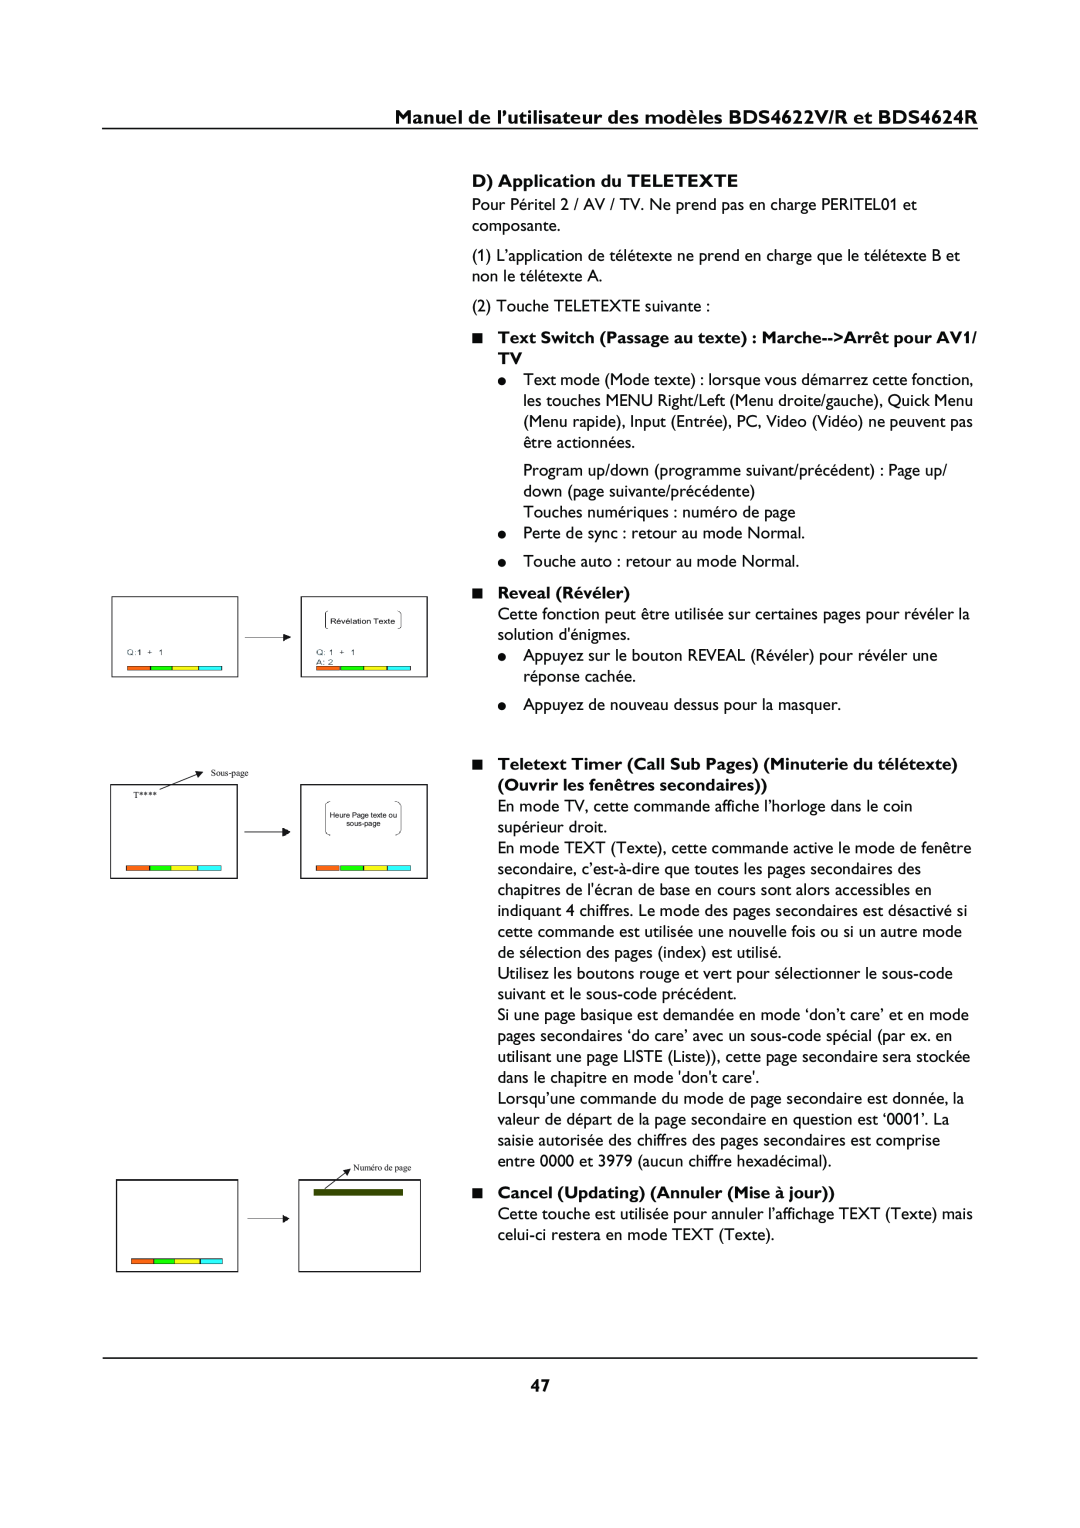 Philips BDS4624R manual D Application du TELETEXTE, Text Switch Passage au texte Marche--Arrêt pour AV1 TV, Reveal Révéler 